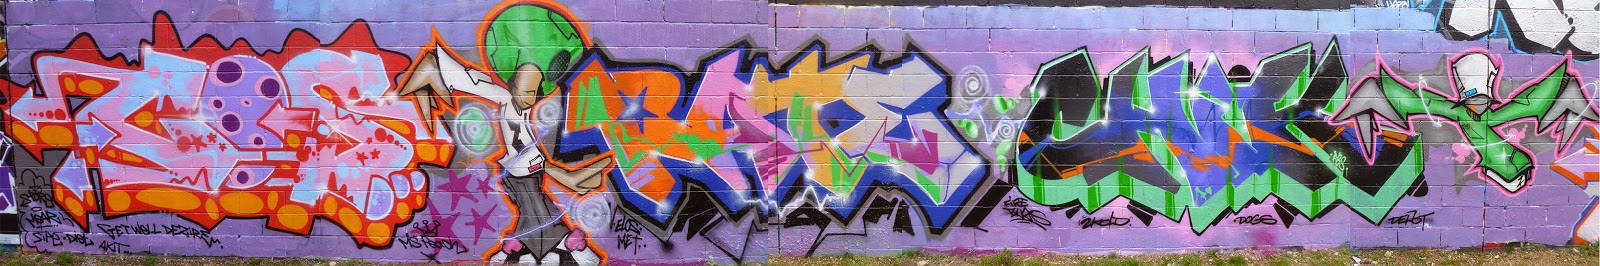 Deen Lifestyle Graff